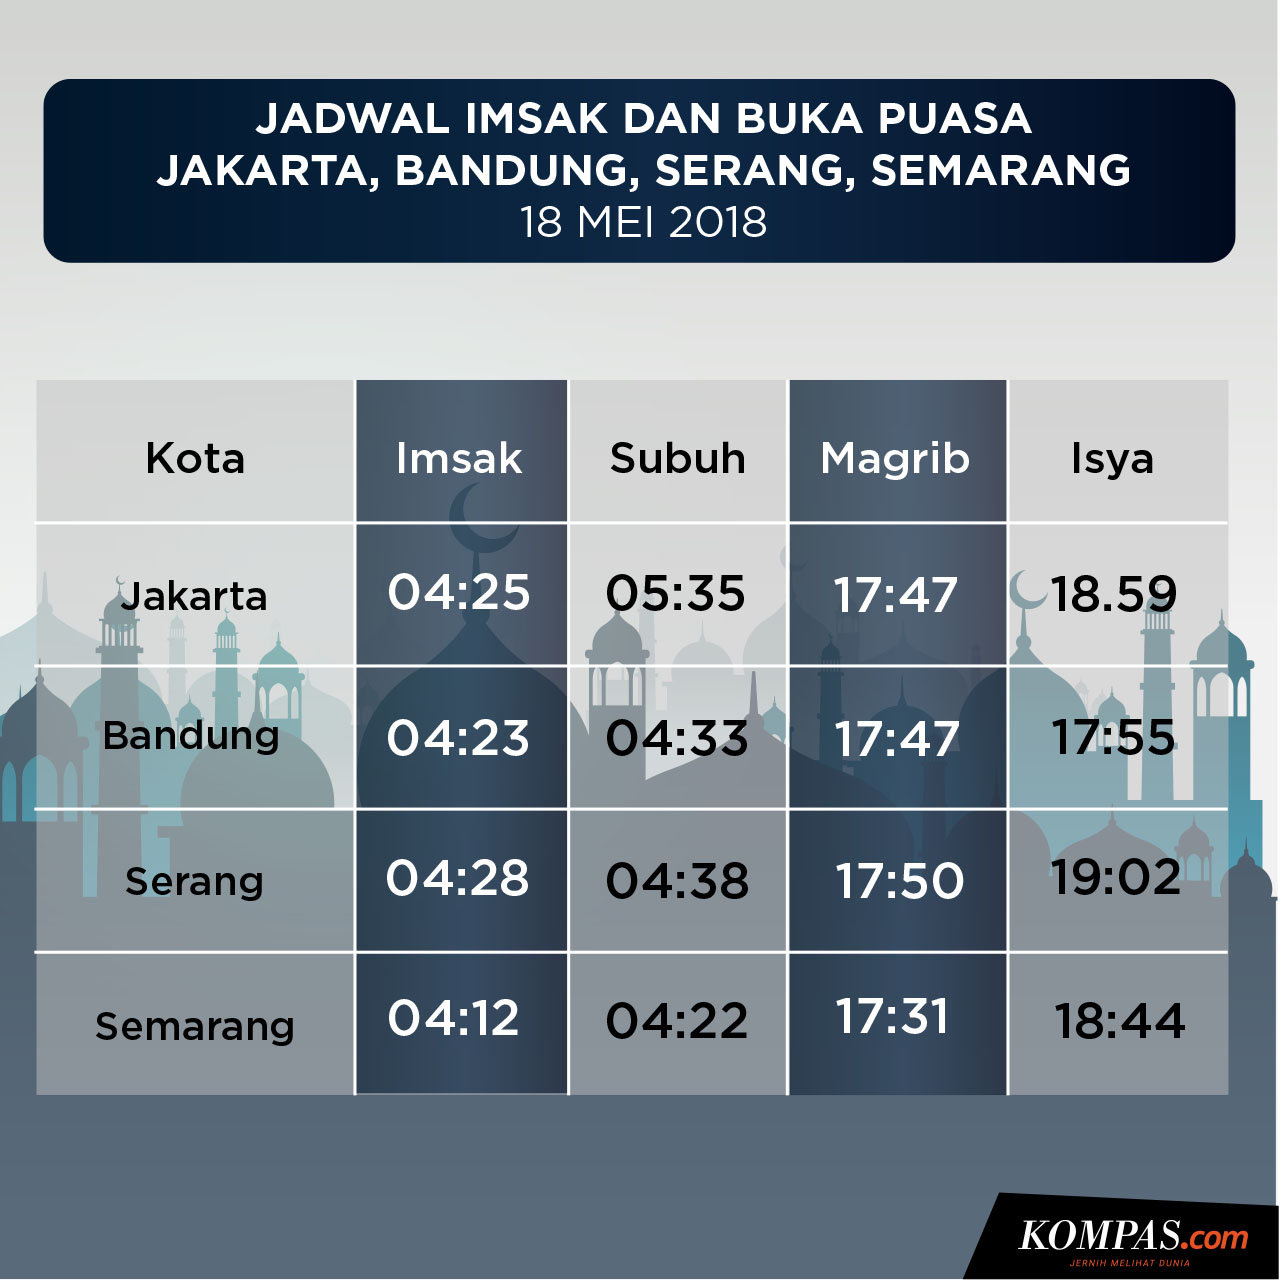 Jadwal Buka Puasa di Jakarta, Bandung, Serang, dan Semarang Hari Ini 18